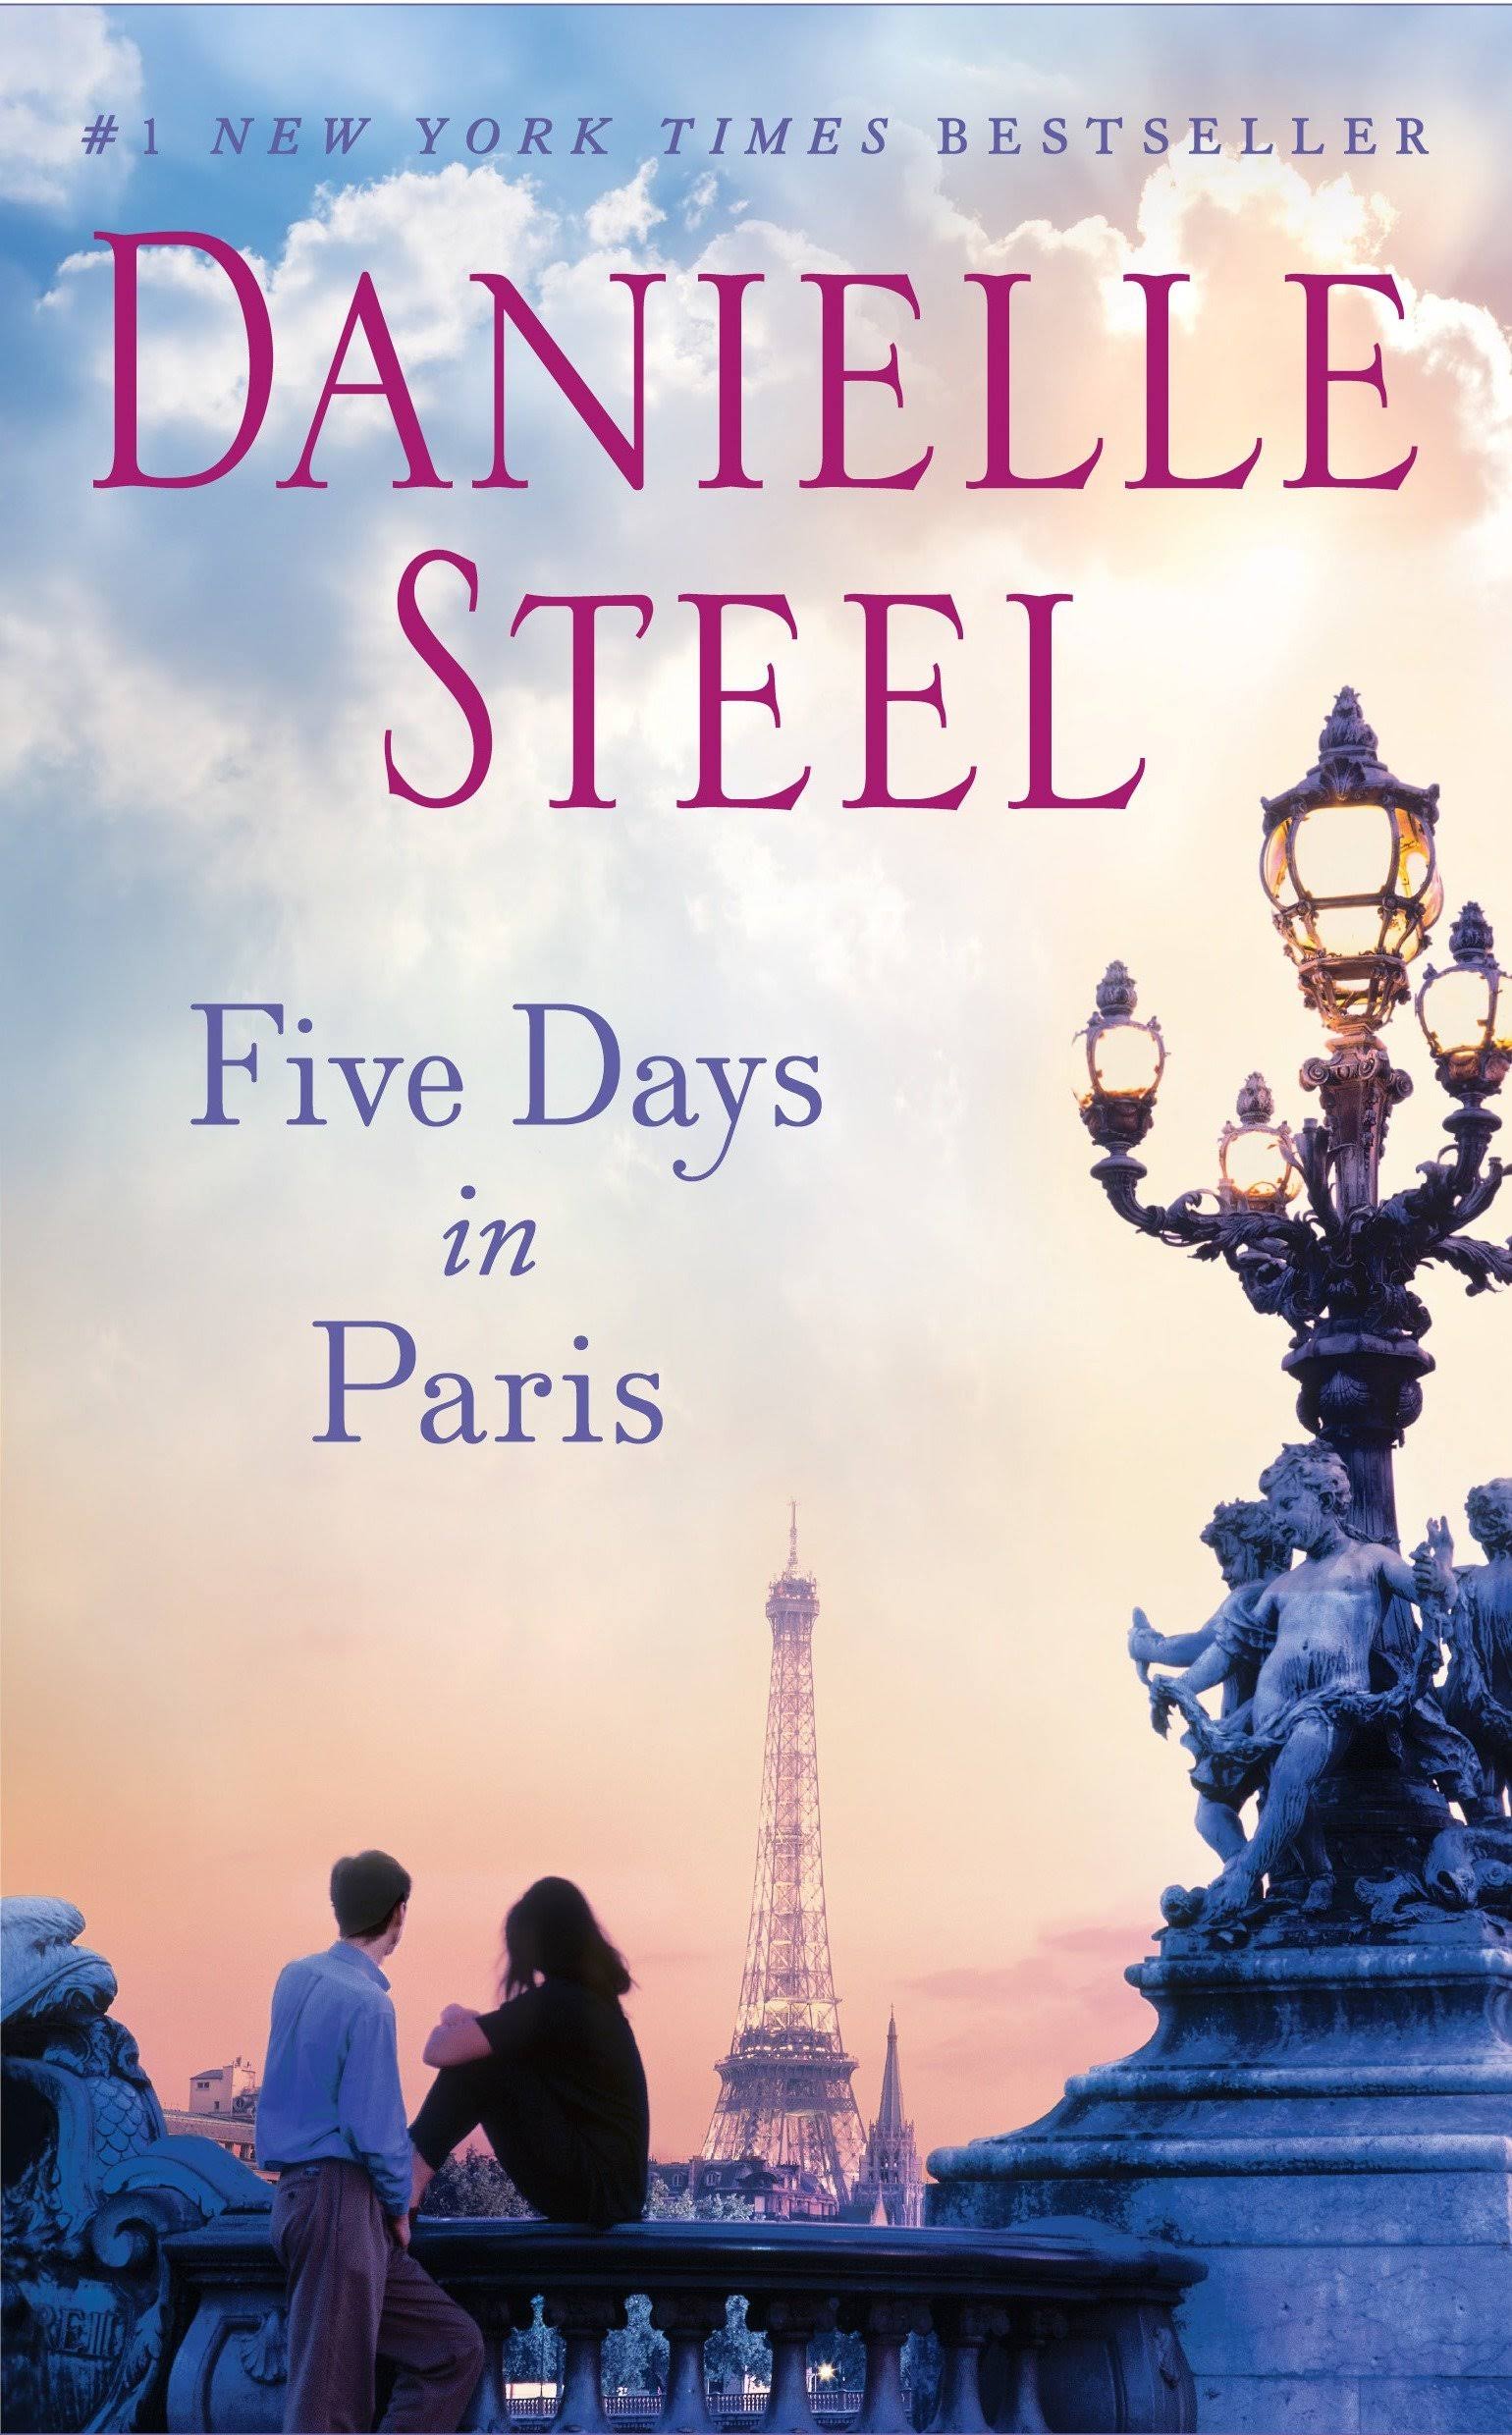 Five Days in Paris: A Novel [Book]